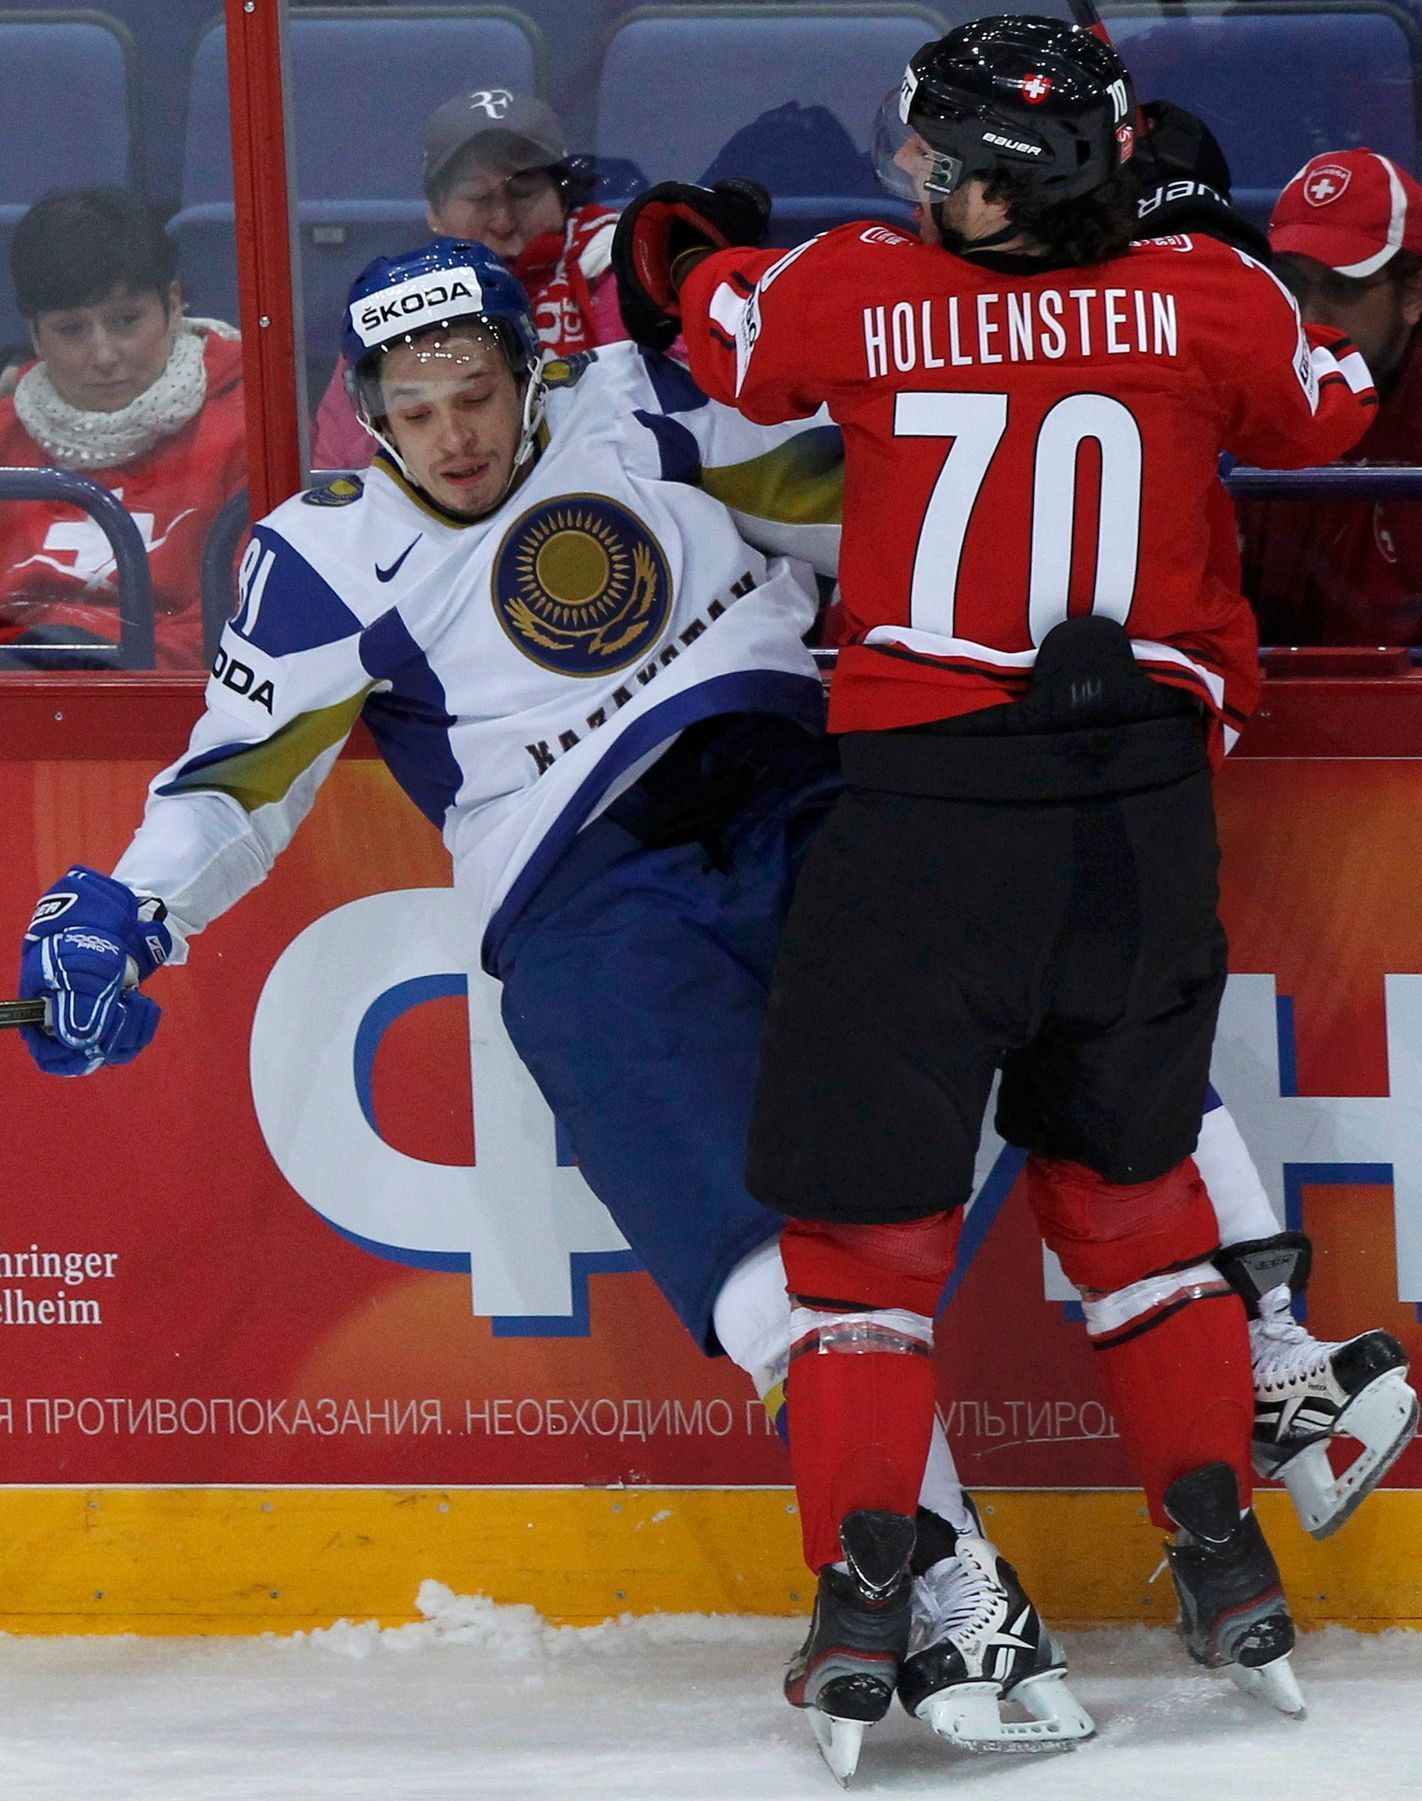 Konstantin Puškaryov a Denis Hollenstein v utkání MS v hokeji 2012 Švýcarsko - Kazachstán